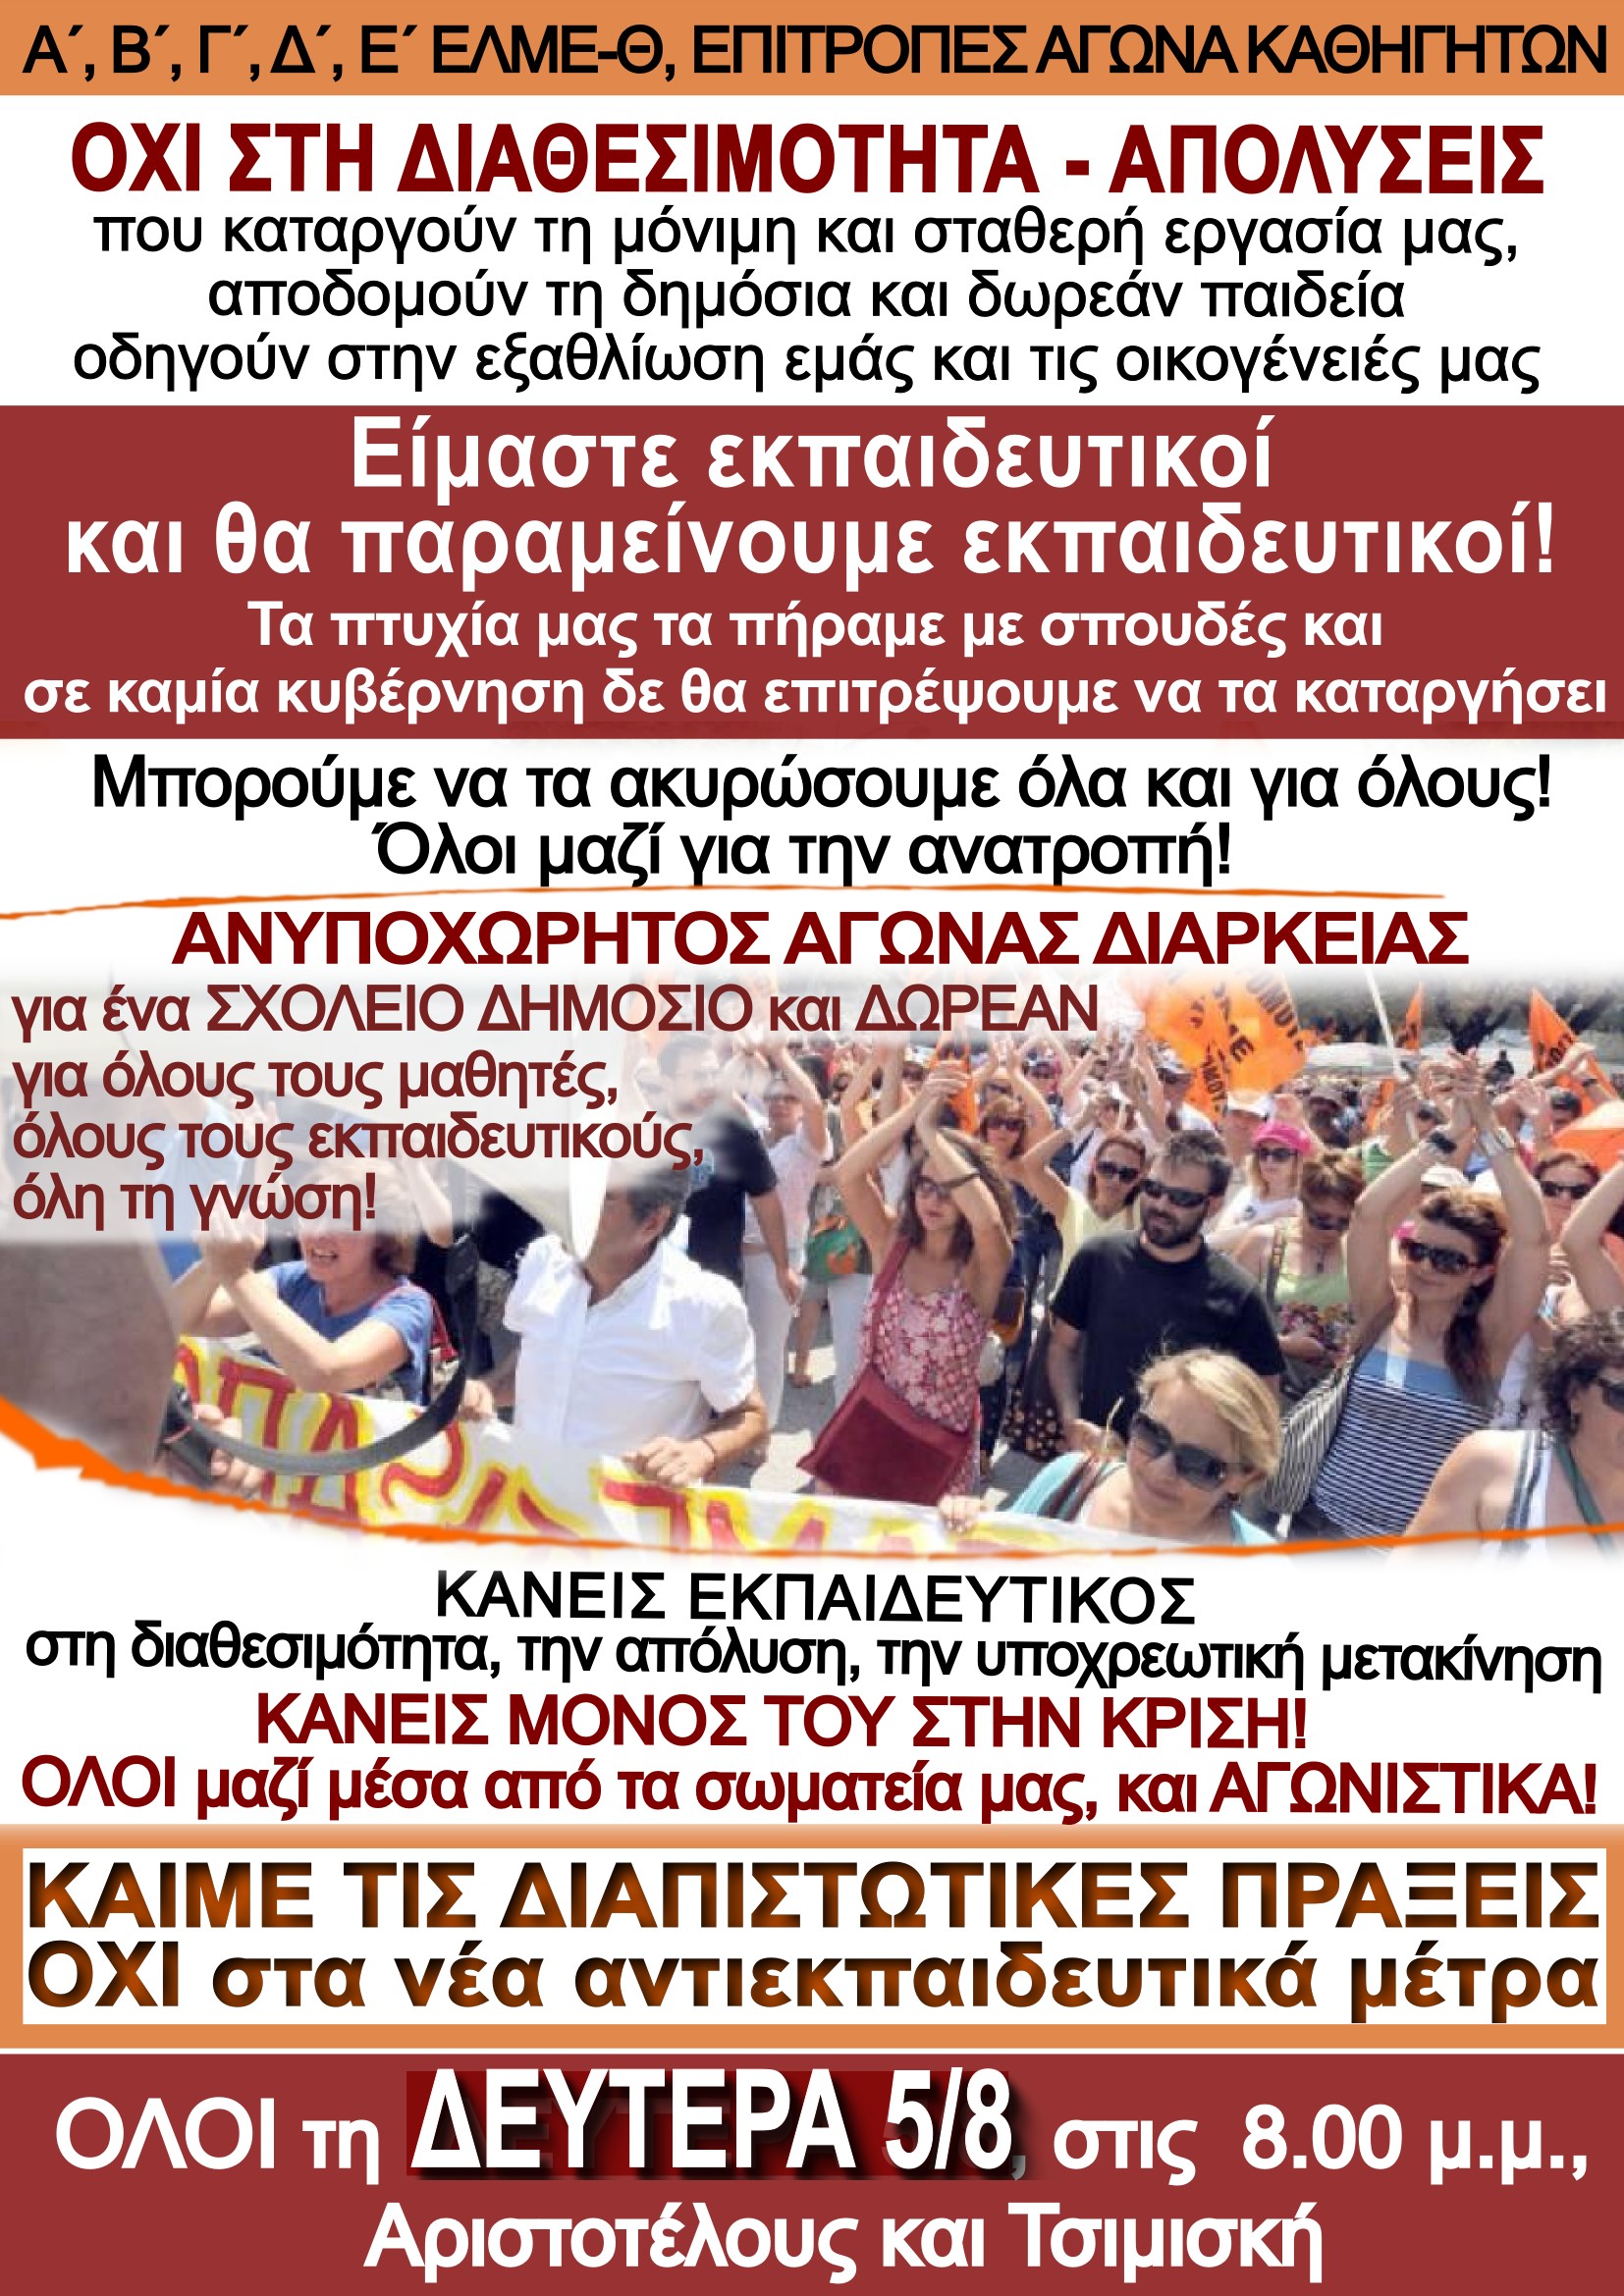 ΕΛΜΕ Θεσ/νίκης: Διαμαρτυρία το απόγευμα Αριστοτέλους με Τσιμισκή